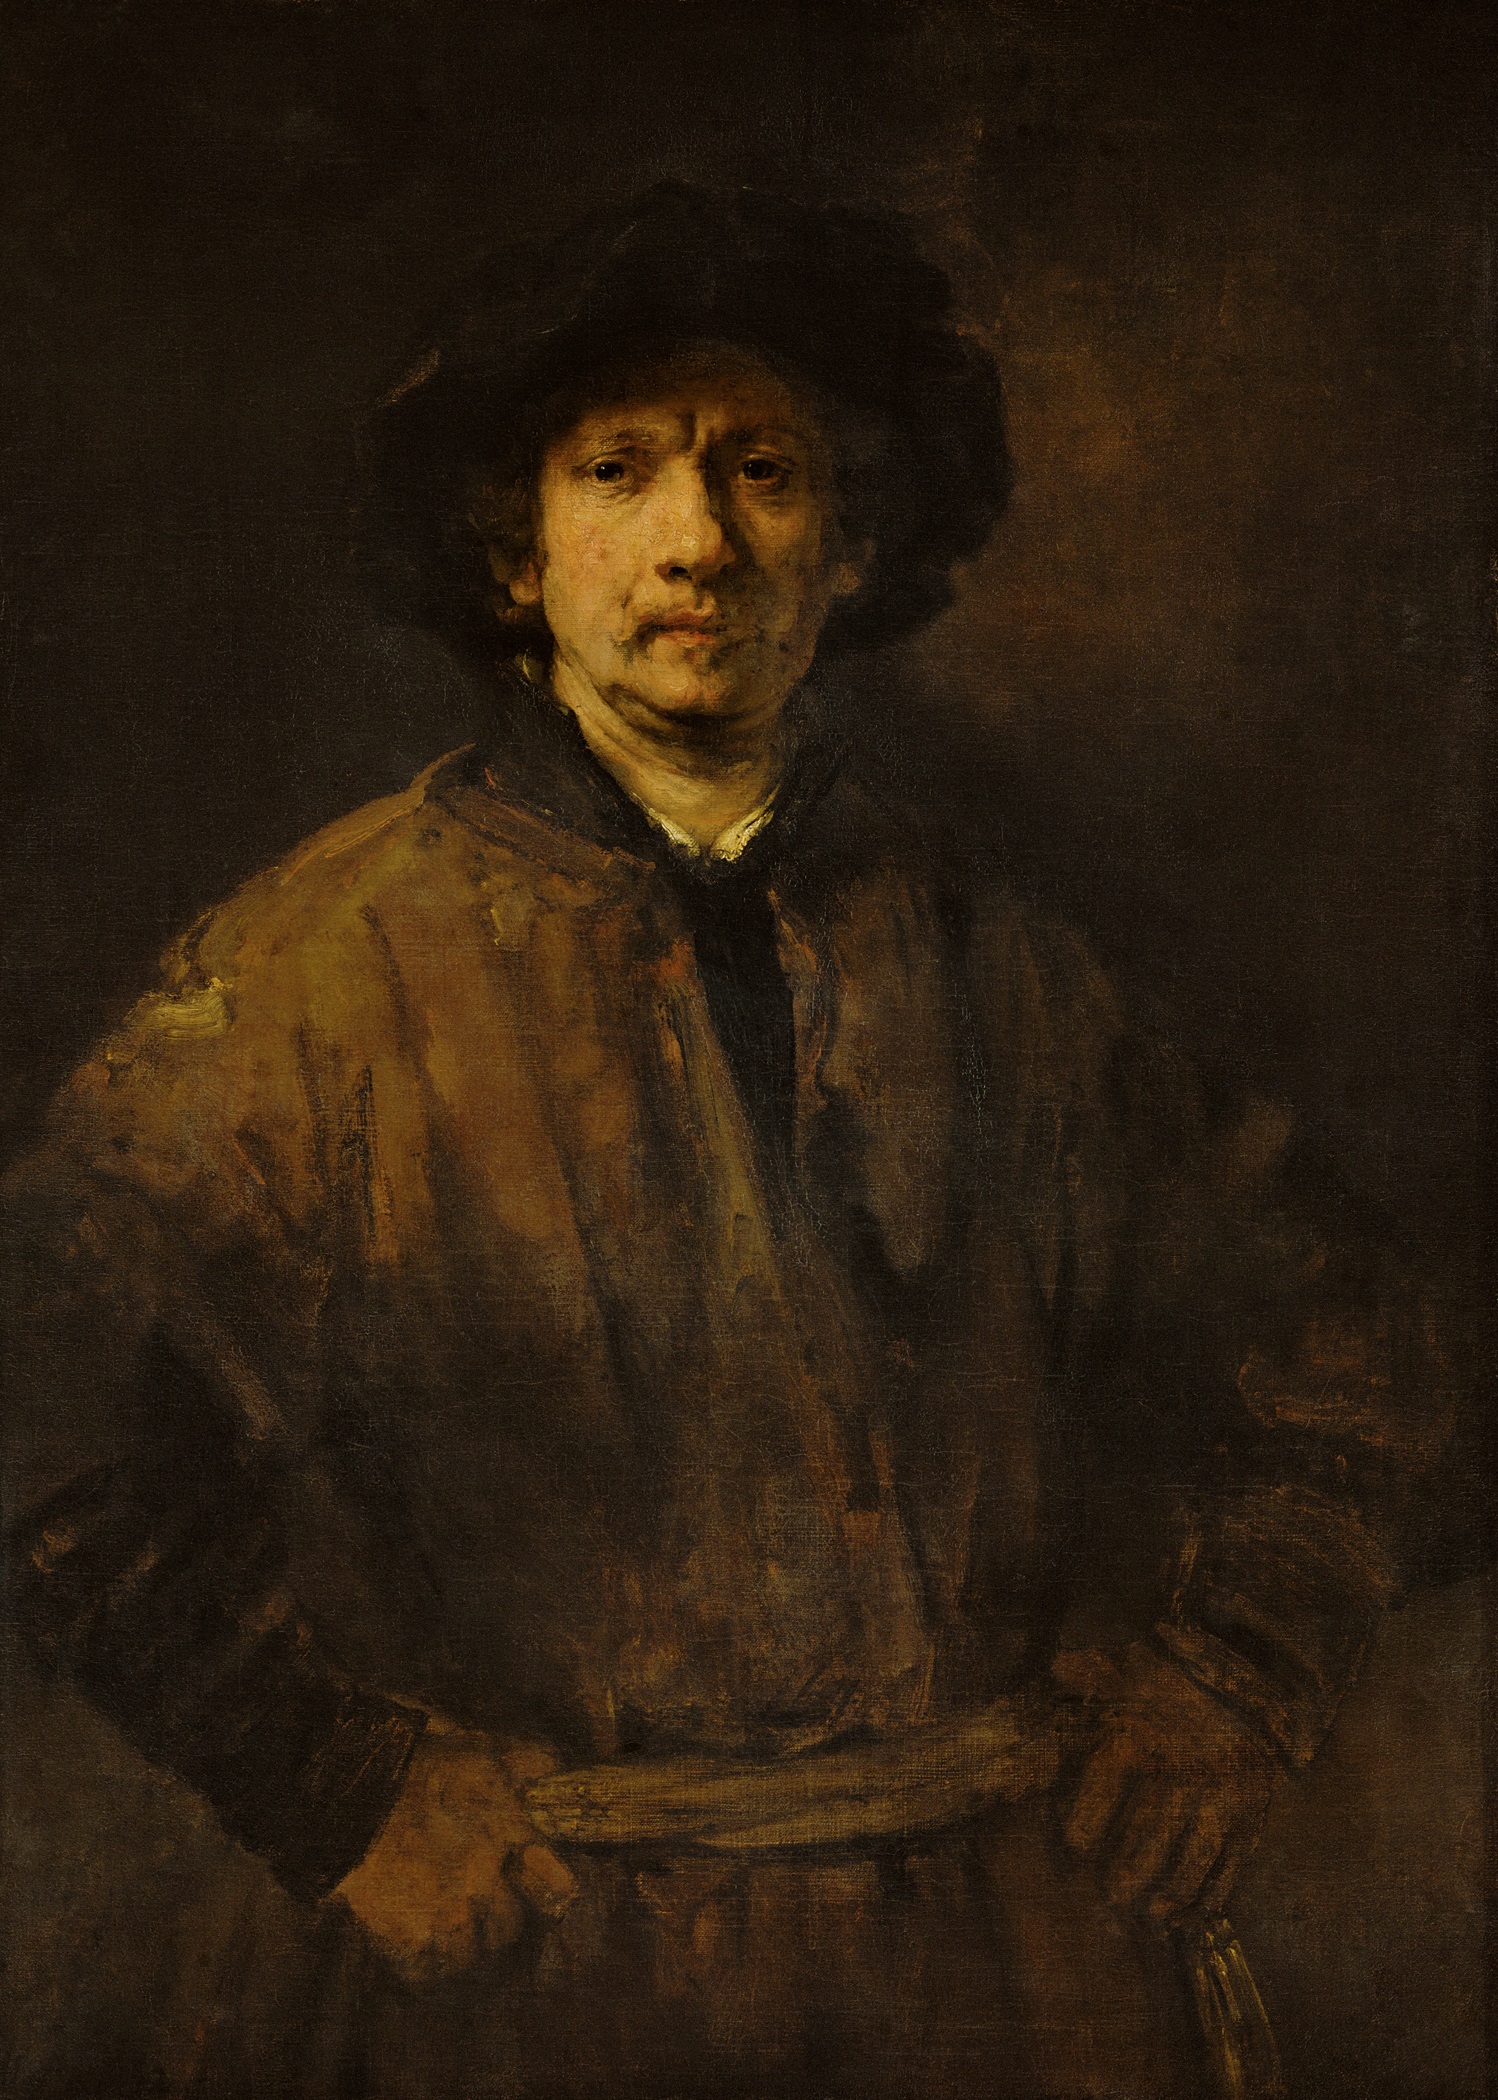 대형 자화상 by Rembrandt van Rijn - 1652 - 81.5 x 112 cm 